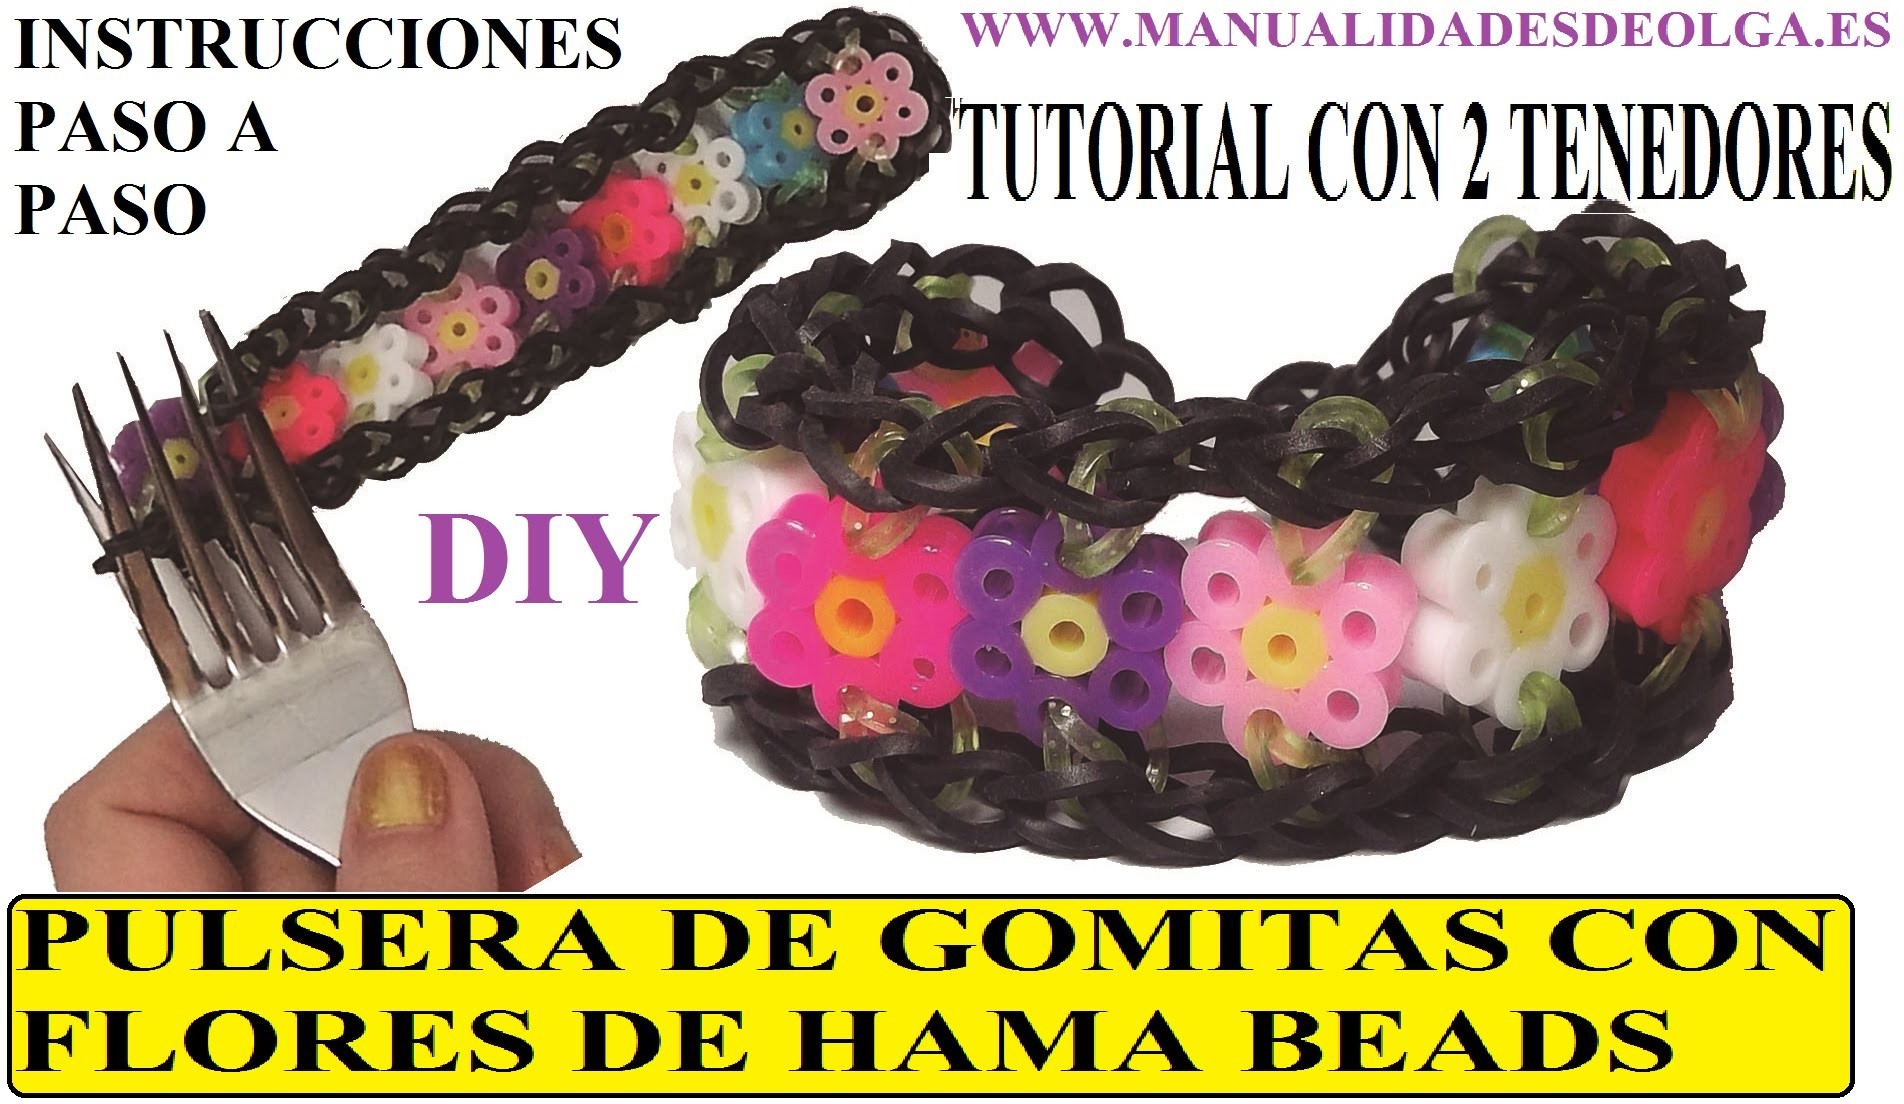 COMO HACER UNA PULSERA DE GOMITAS CON FLORES DE HAMA BEADS CON DOS TENEDORES. figuras de hama beads.